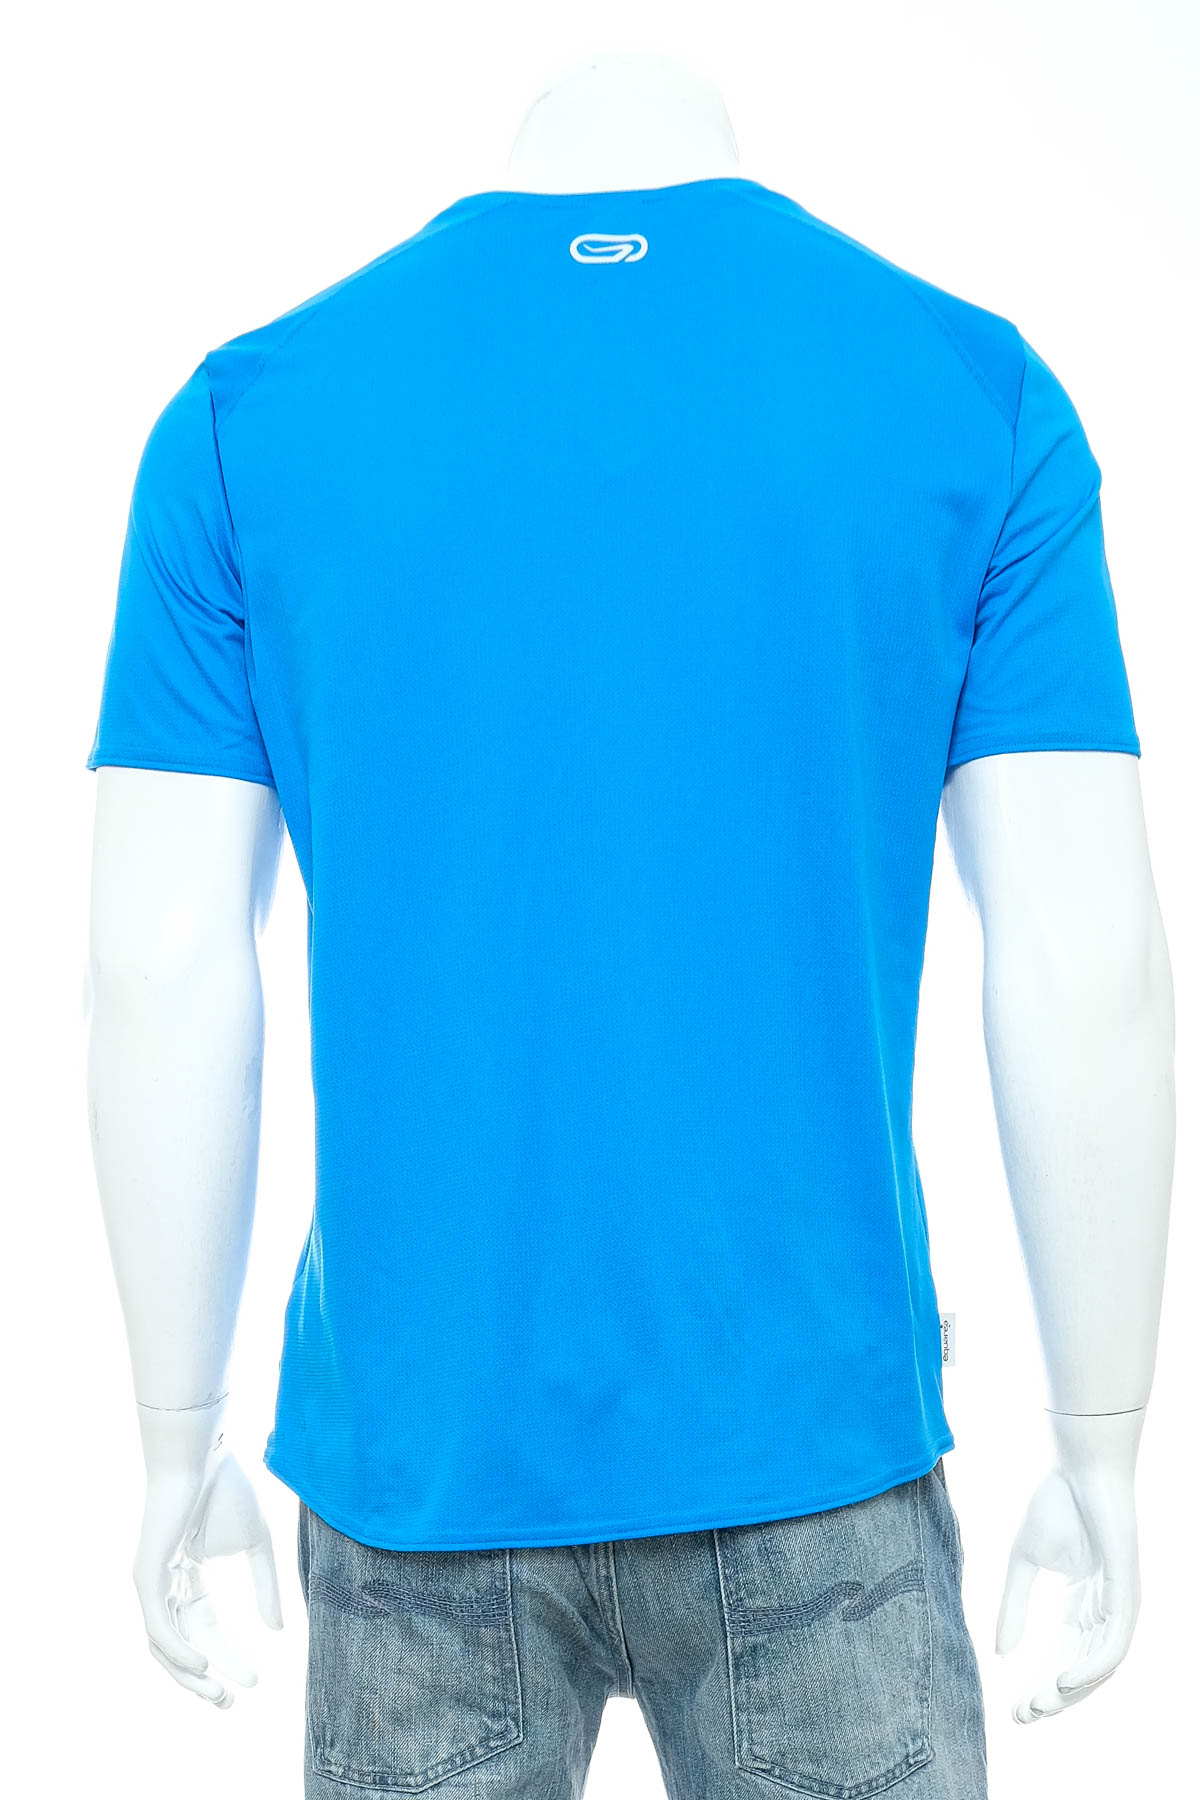 Αντρική μπλούζα - Oxylane - 1